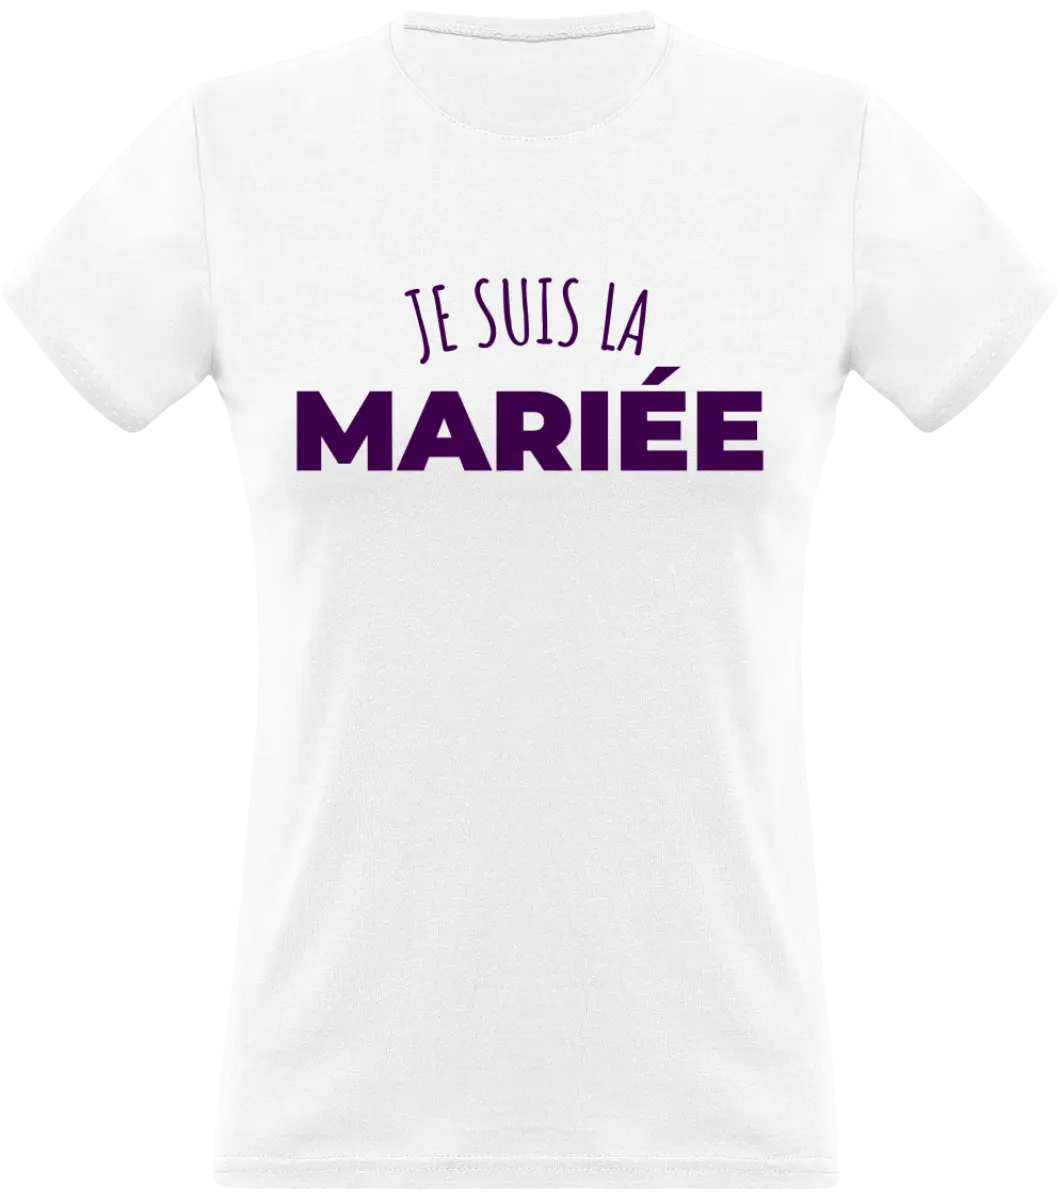 T-shirt EVJF "Je suis la mariée" - French Humour